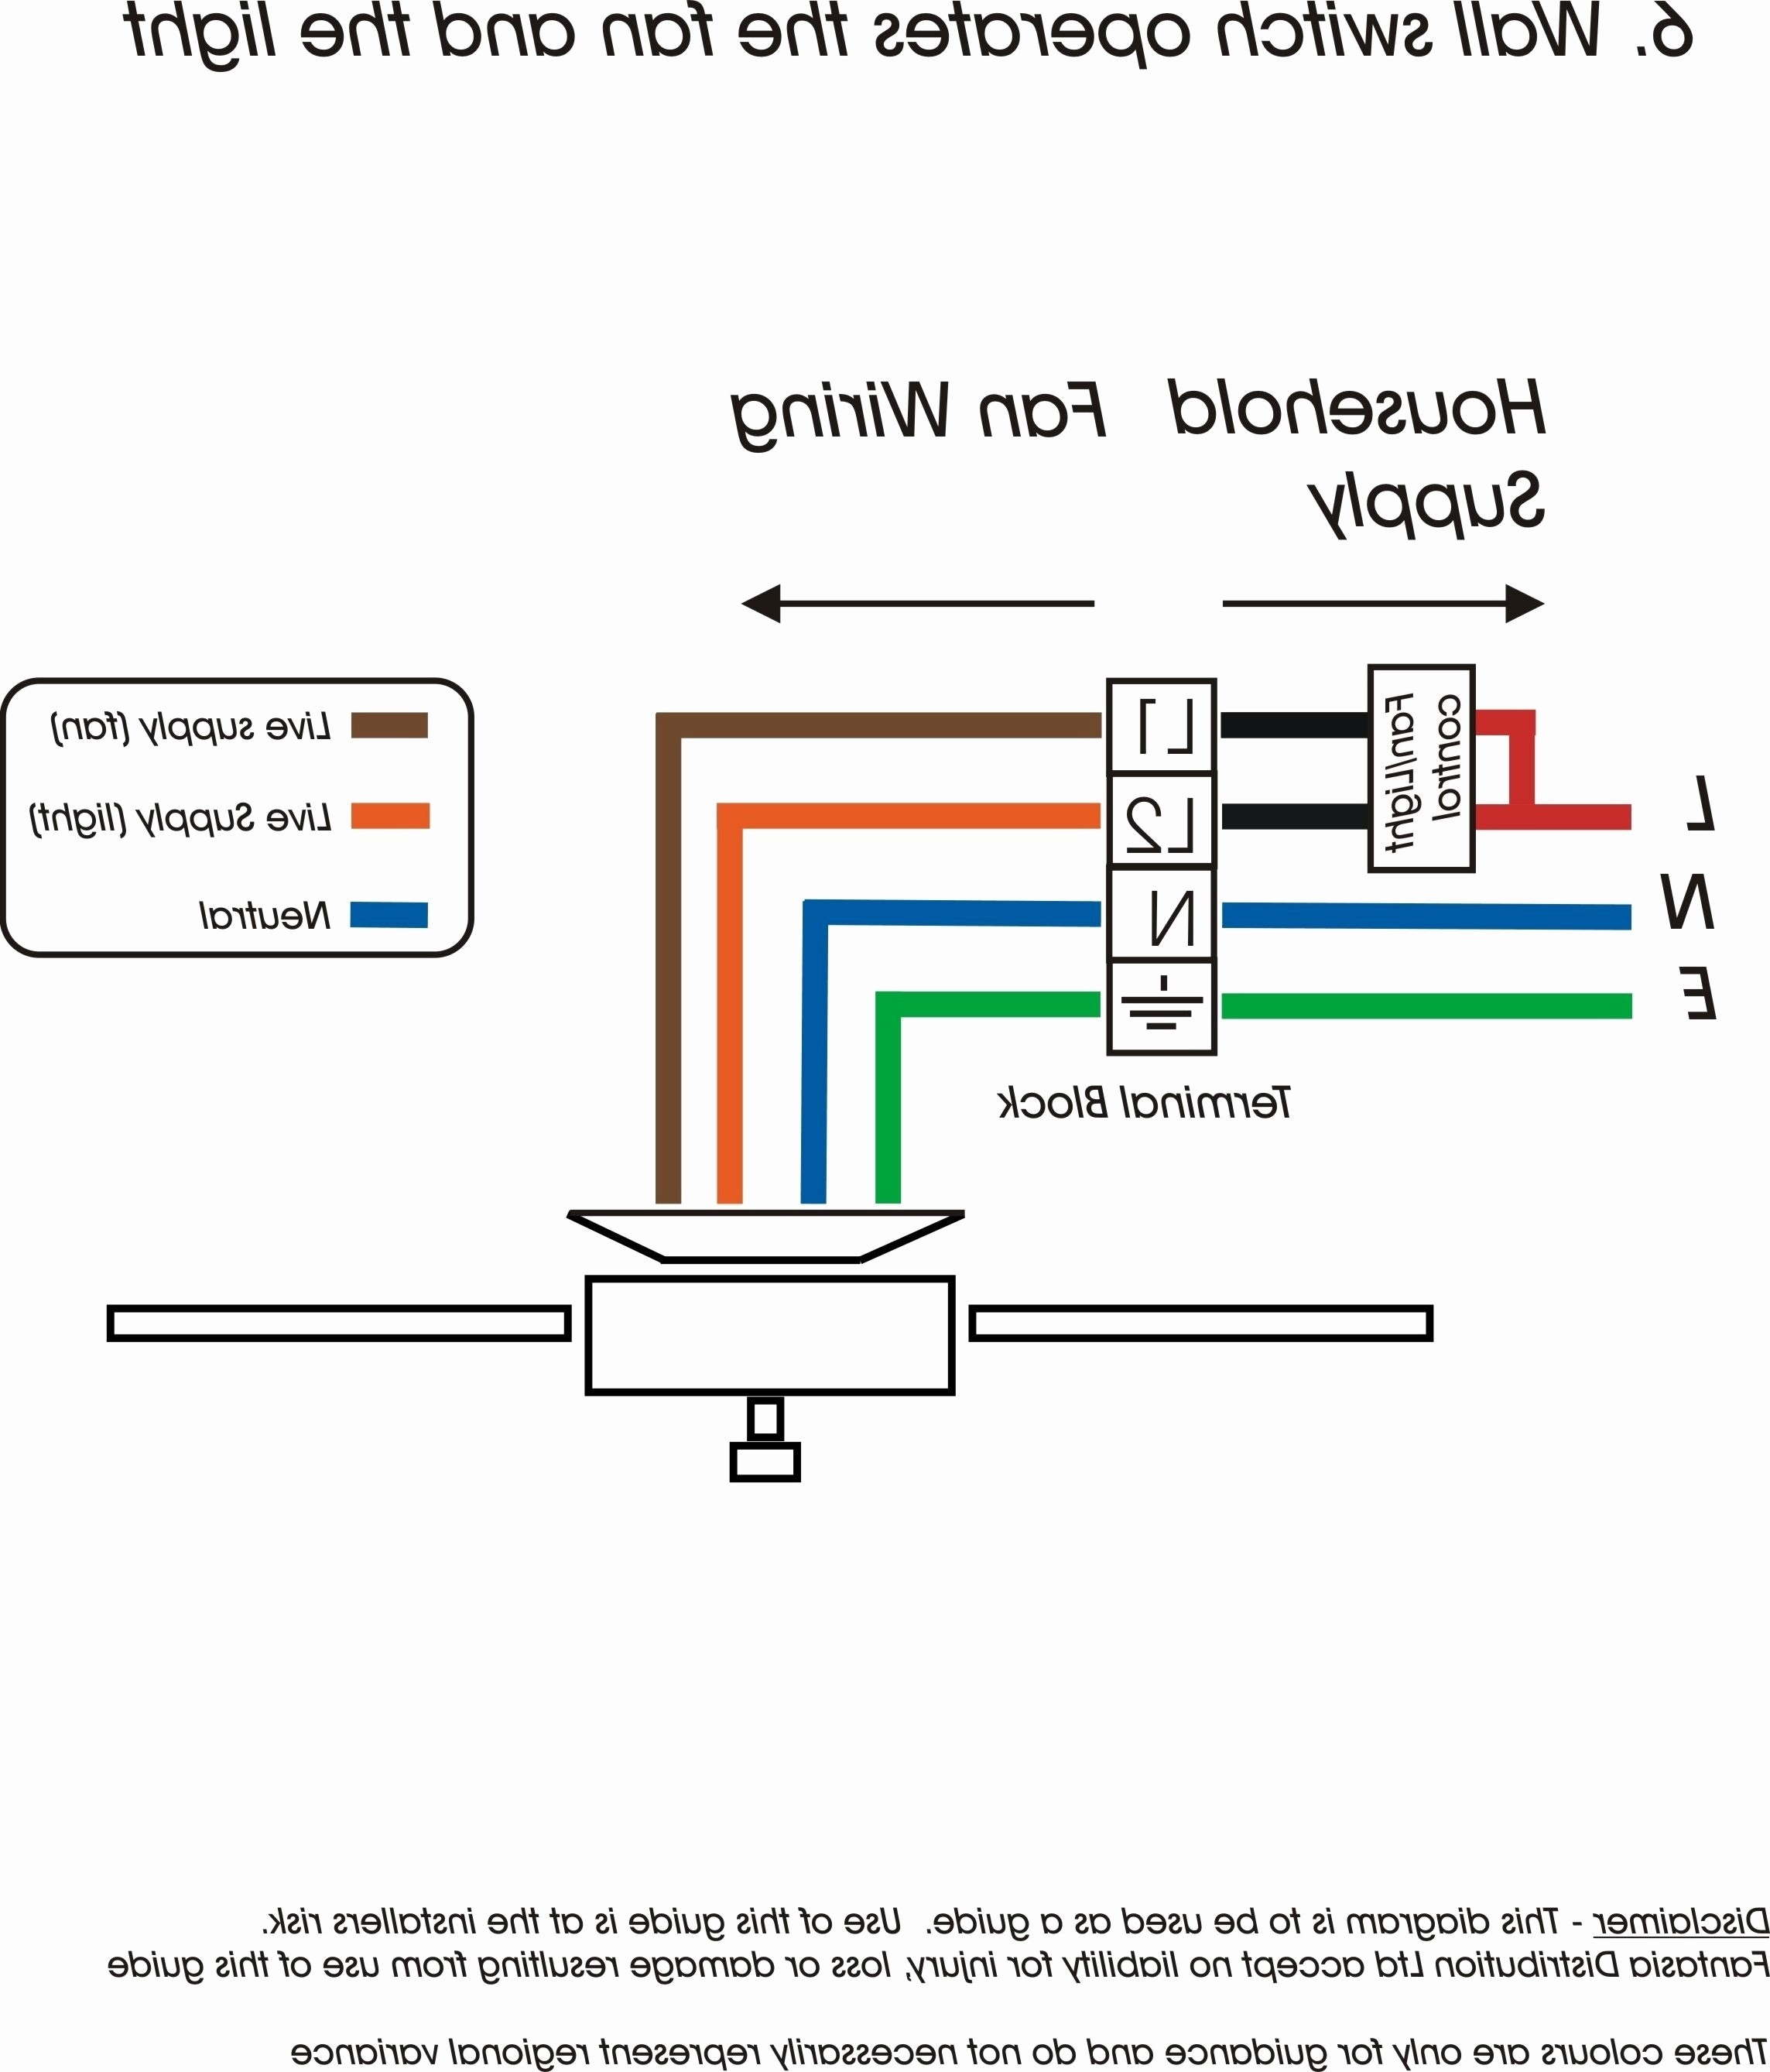 ipphil wp content 2018 07 interav alte rh idijournal VW Voltage Regulator Wiring Diagram Generator Voltage